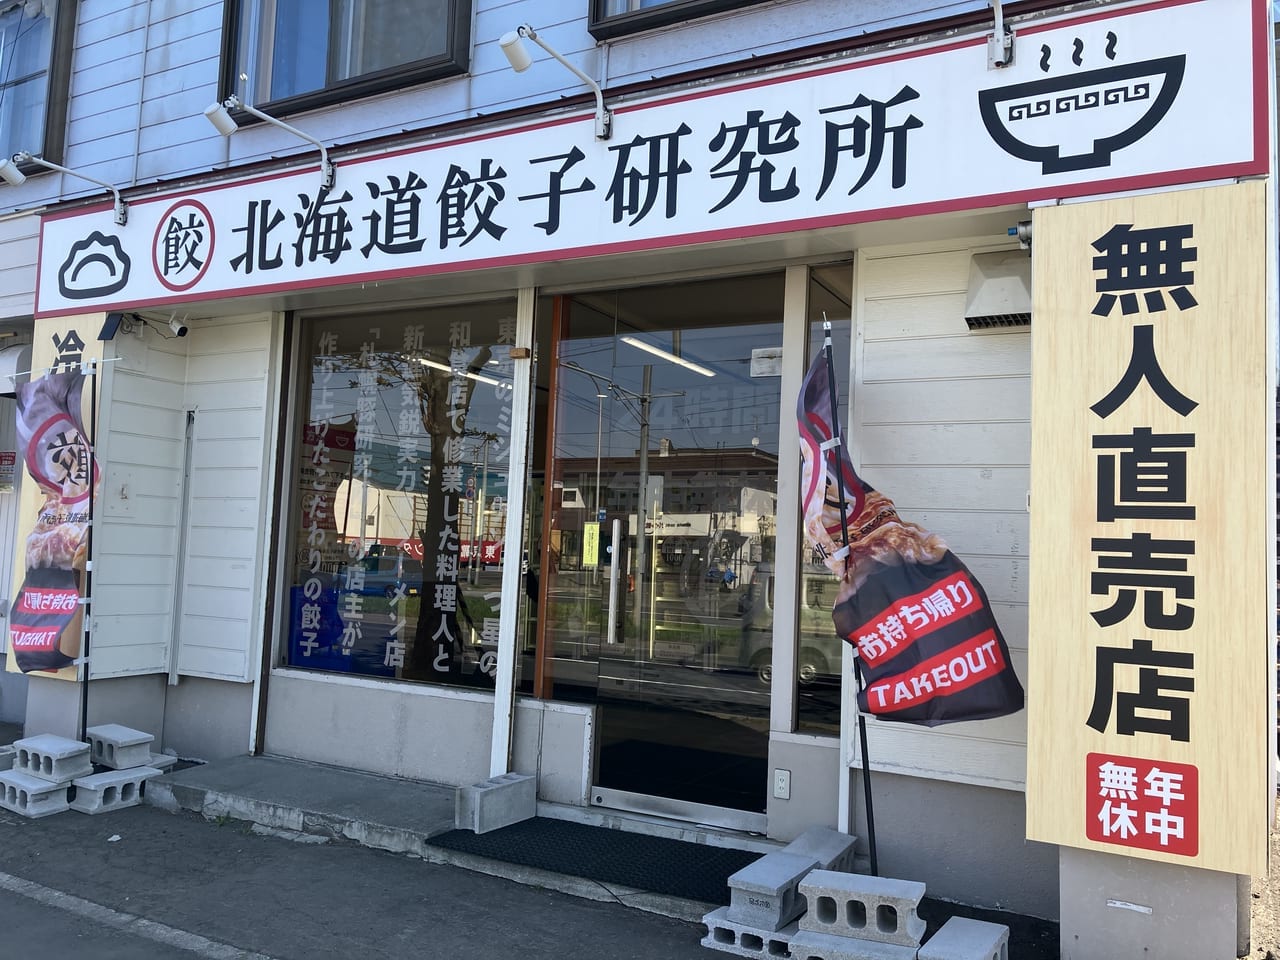 環状通沿いの北海道餃子研究所で24時間無人直売餃子販売中